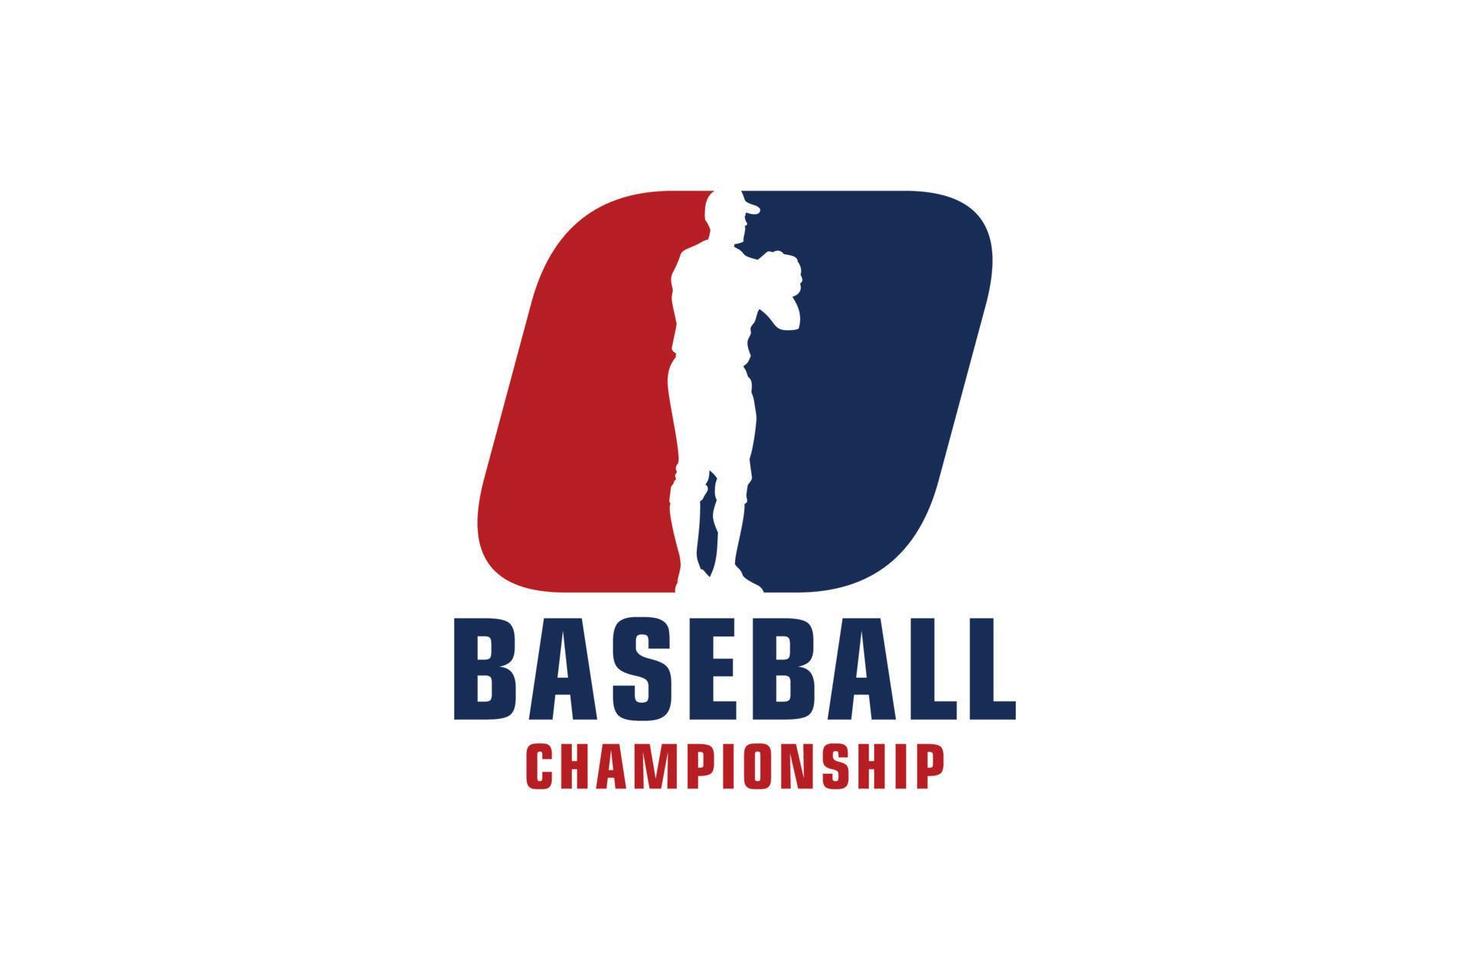 Buchstabe o mit Baseball-Logo-Design. Vektordesign-Vorlagenelemente für Sportteams oder Corporate Identity. vektor